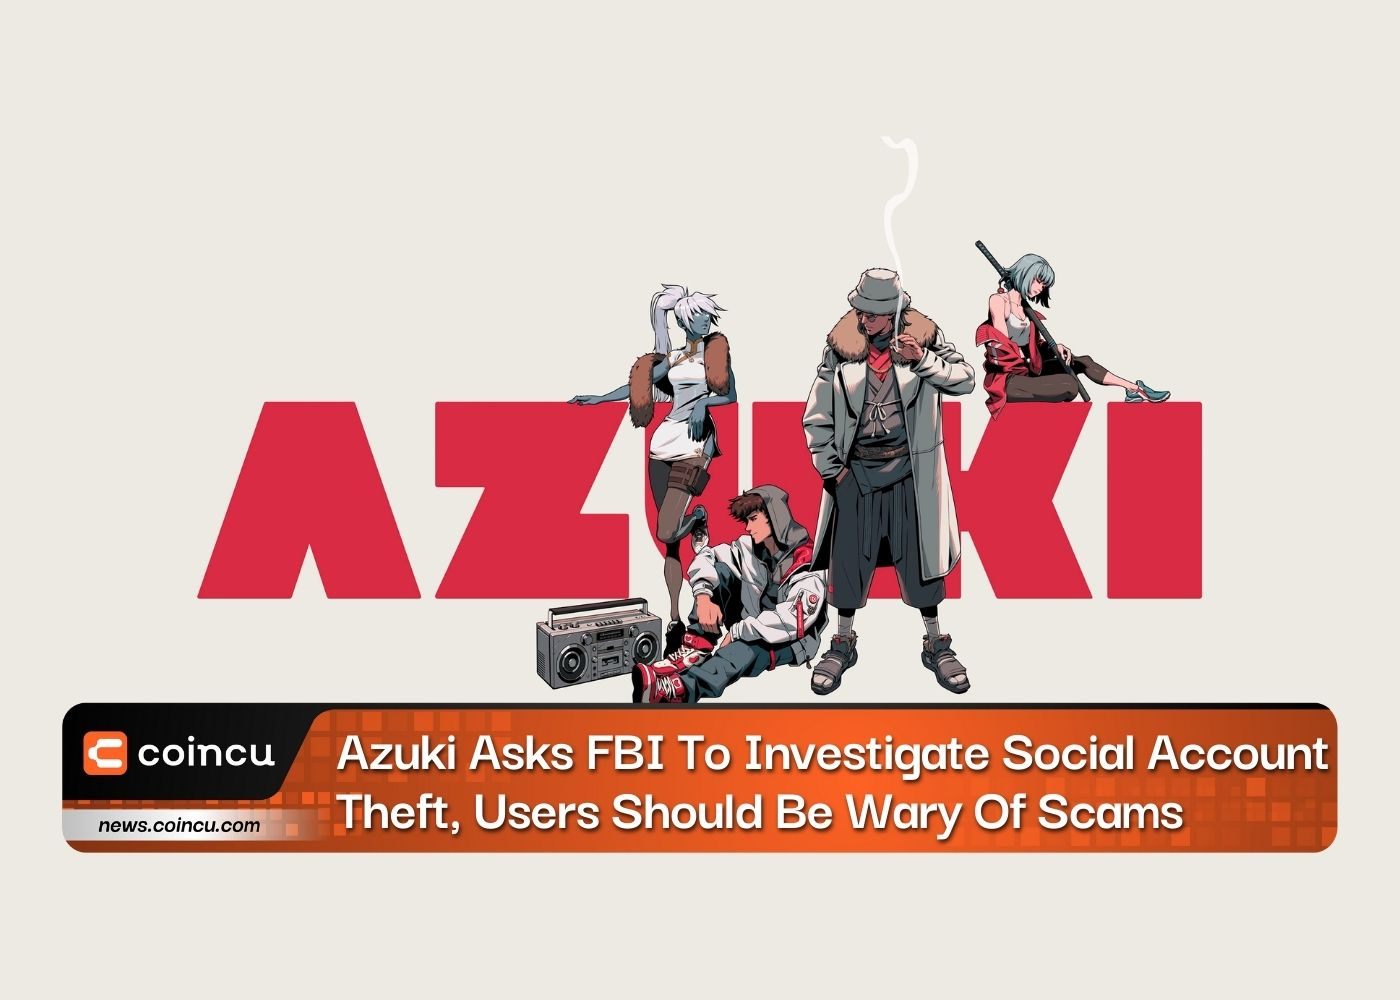 Azuki, FBI'dan Sosyal Hesap Hırsızlığını Araştırmasını İstedi, Kullanıcılar Dolandırıcılıklara Karşı Dikkatli Olmalıdır